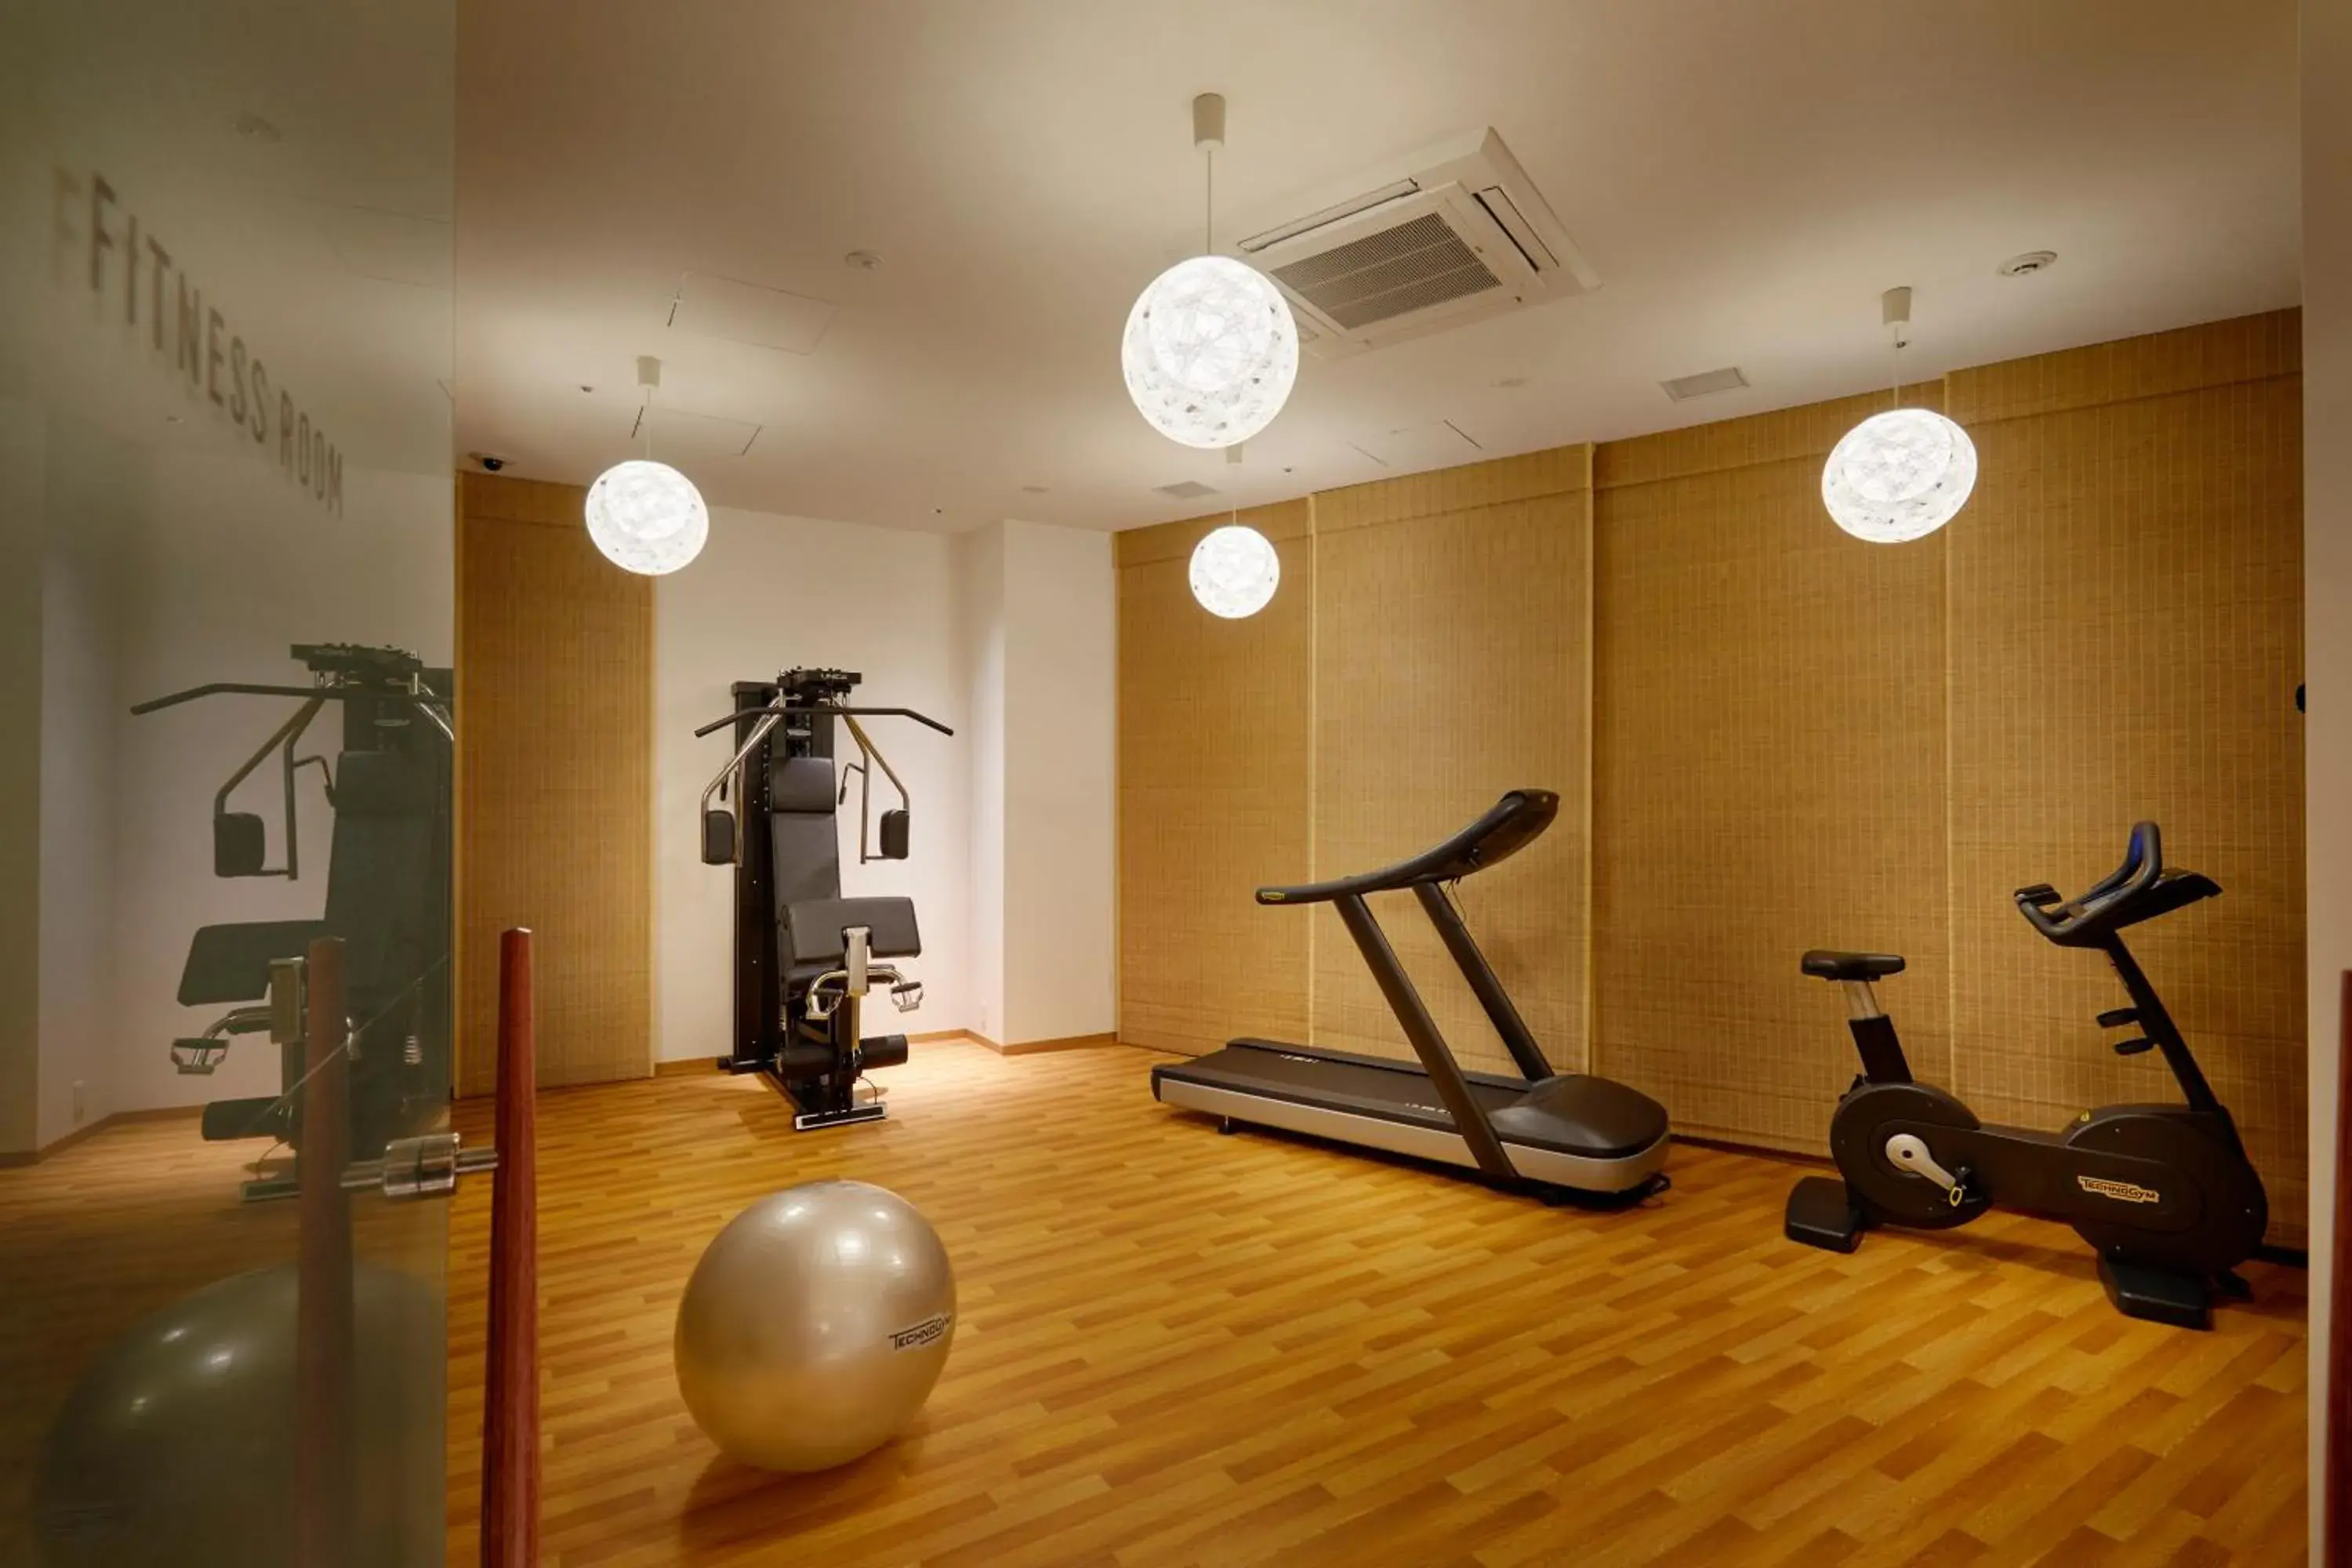 Fitness centre/facilities, Fitness Center/Facilities in Hotel Amanek Kanazawa